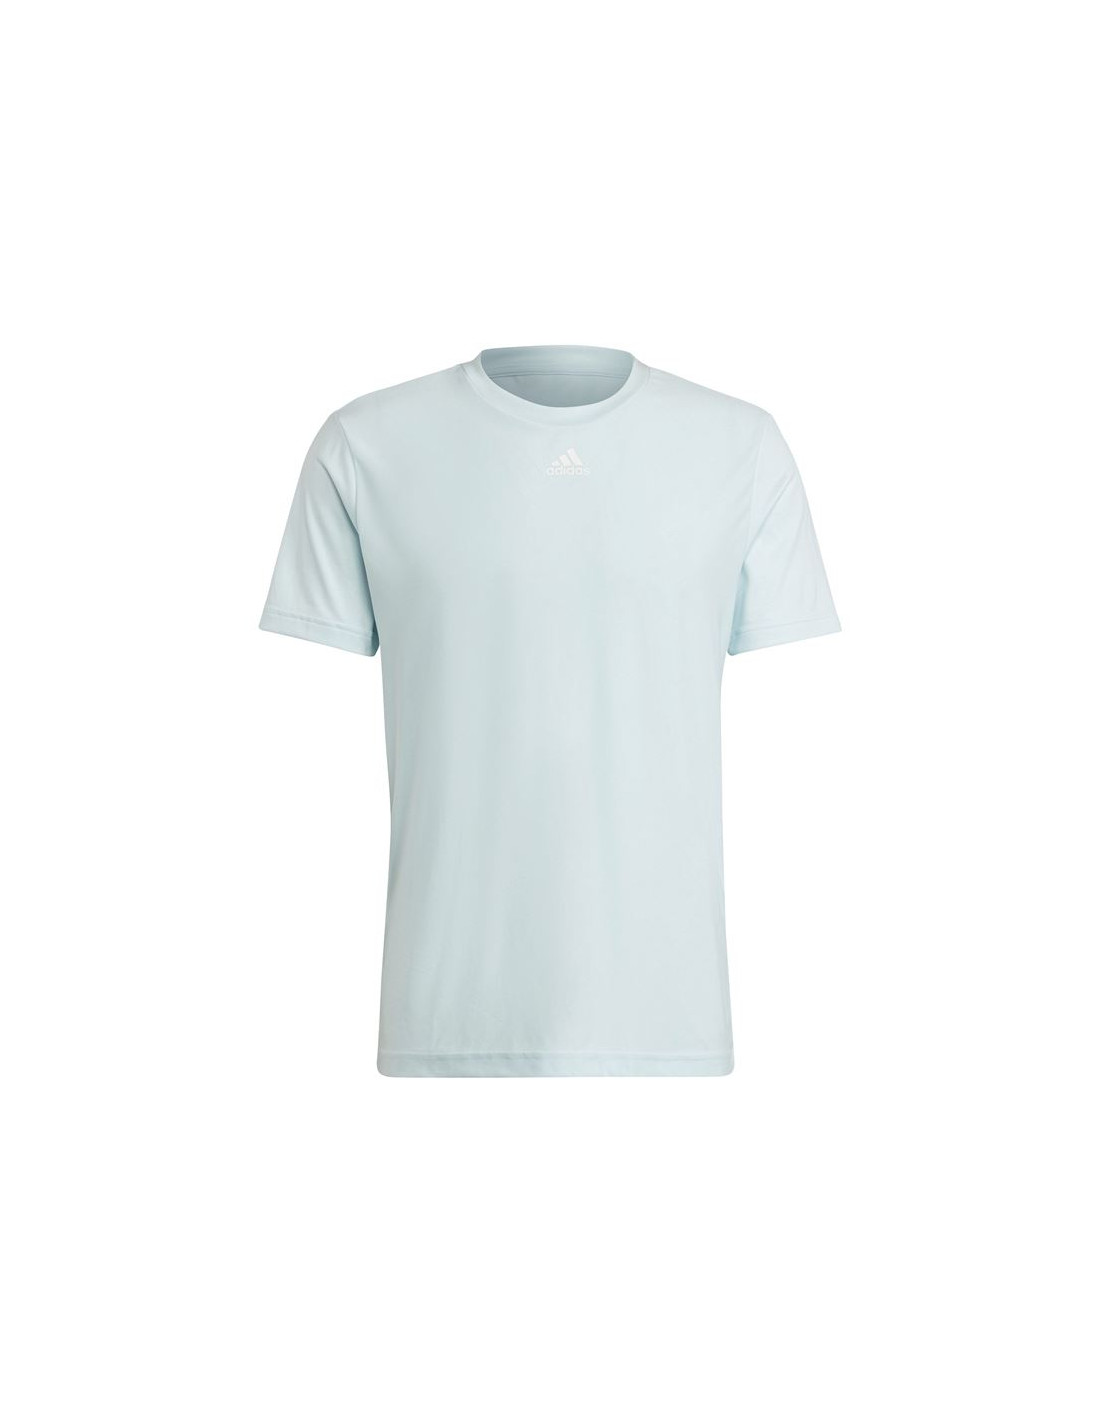 Camiseta adidas 3-bar graphic hombre blue